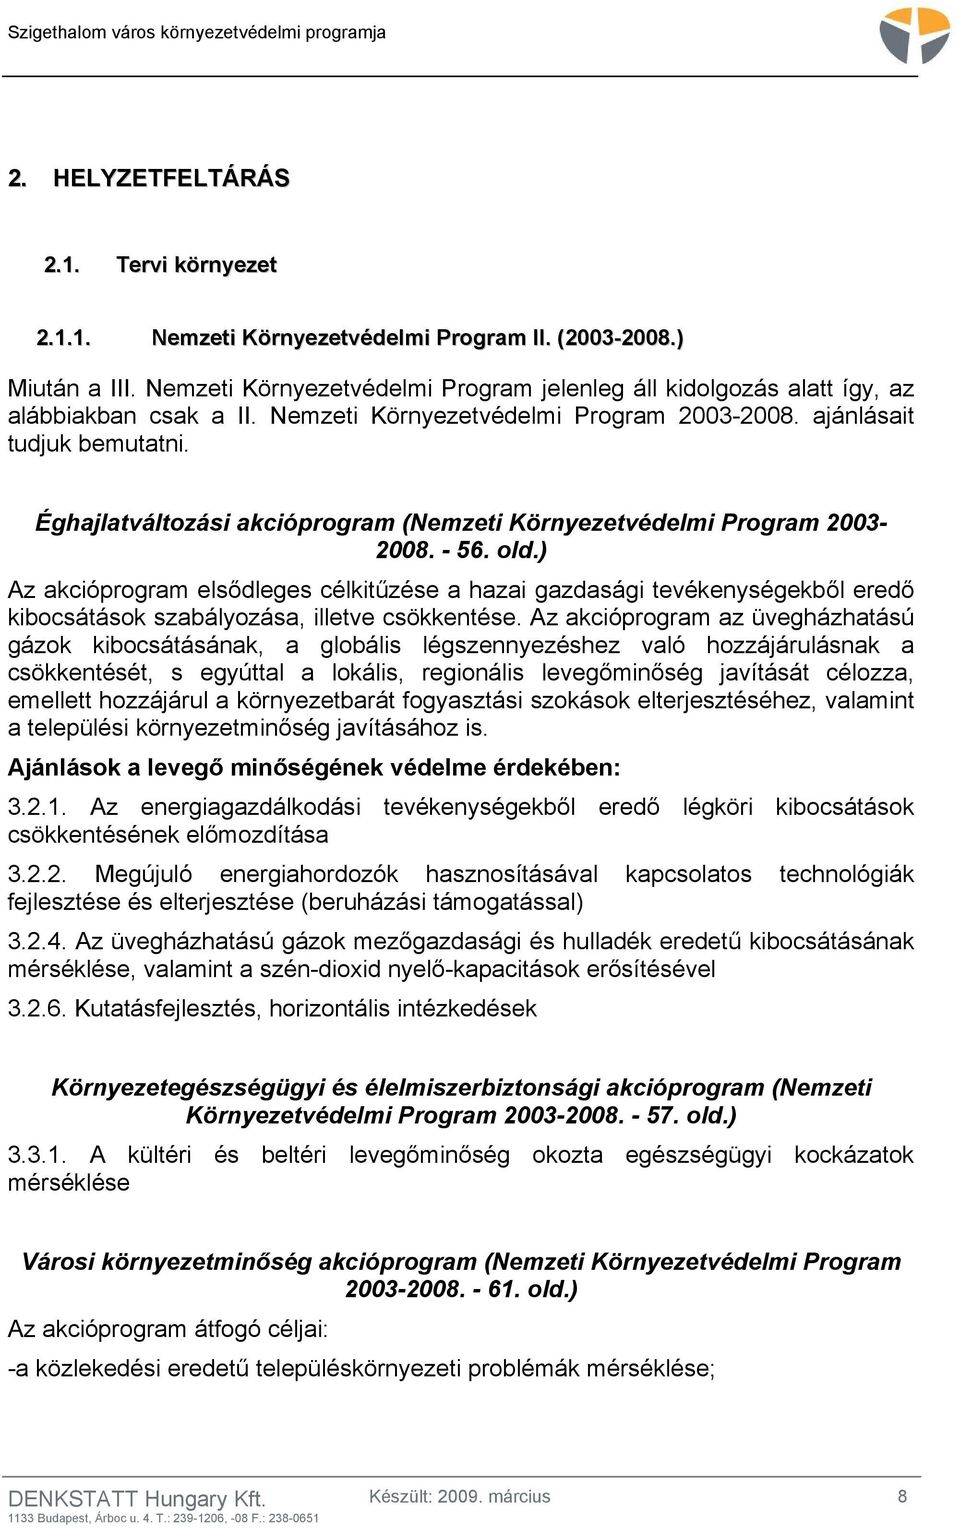 Éghajlatváltozási akcióprogram (Nemzeti Környezetvédelmi Program 2003-2008. - 56. old.